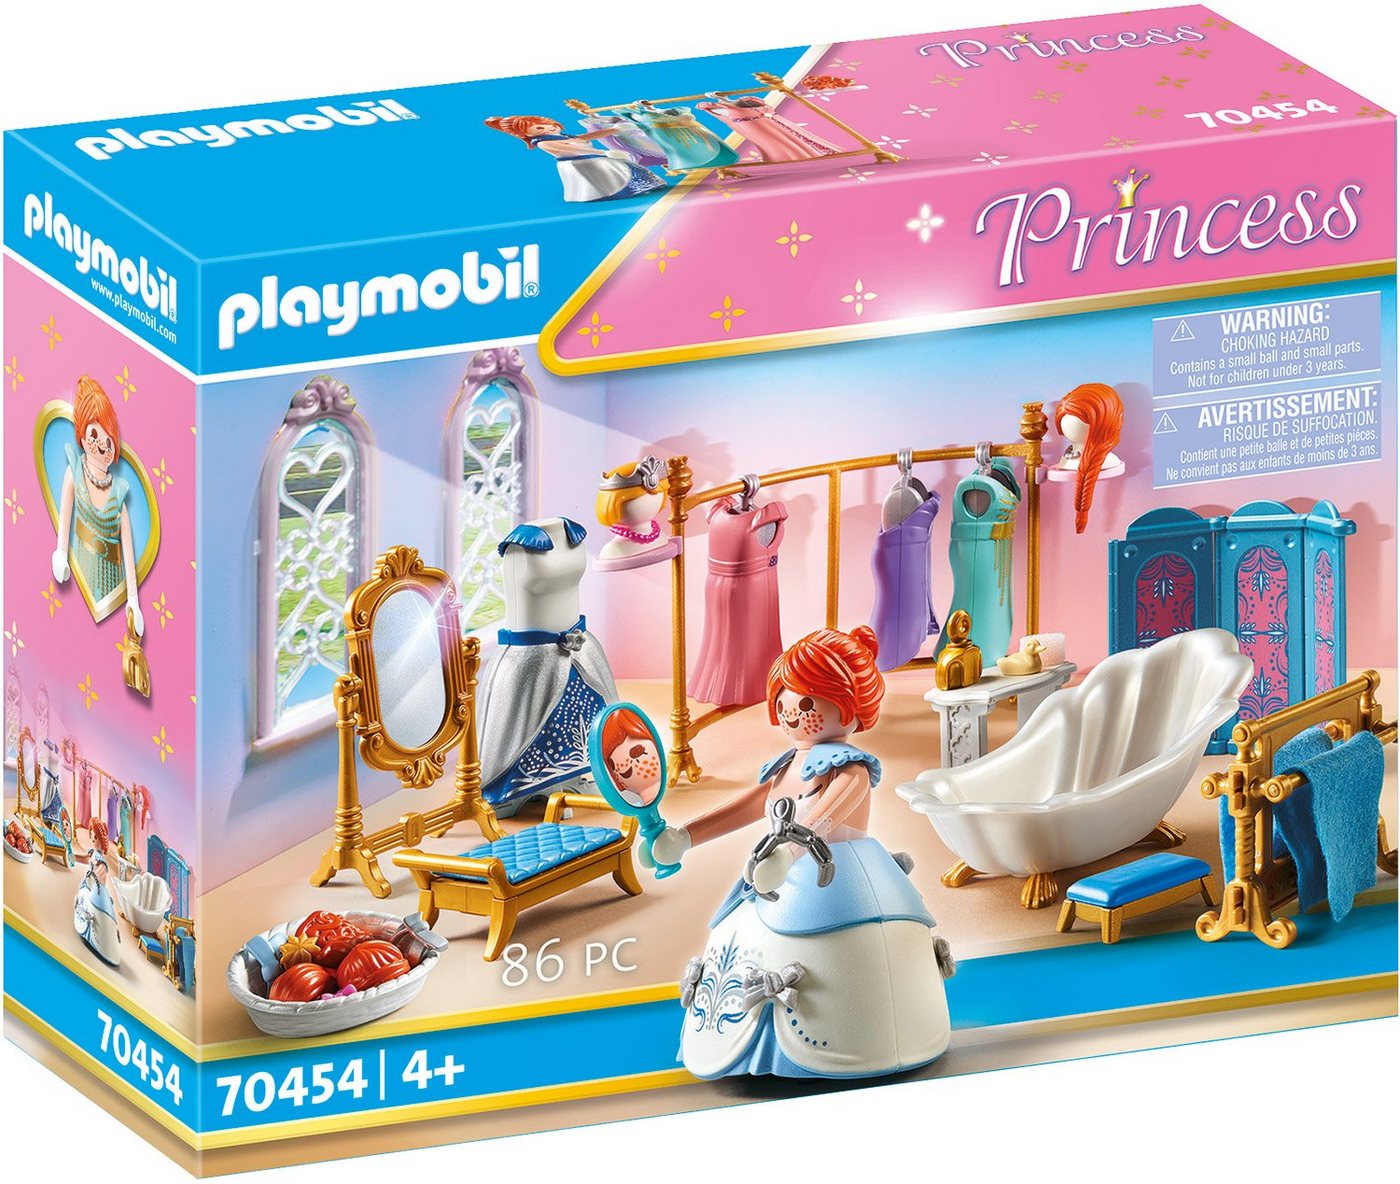 Playmobil® Konstruktions-Spielset Ankleidezimmer mit Badewanne (70454), Princess, (86 St), Made in Germany von Playmobil®